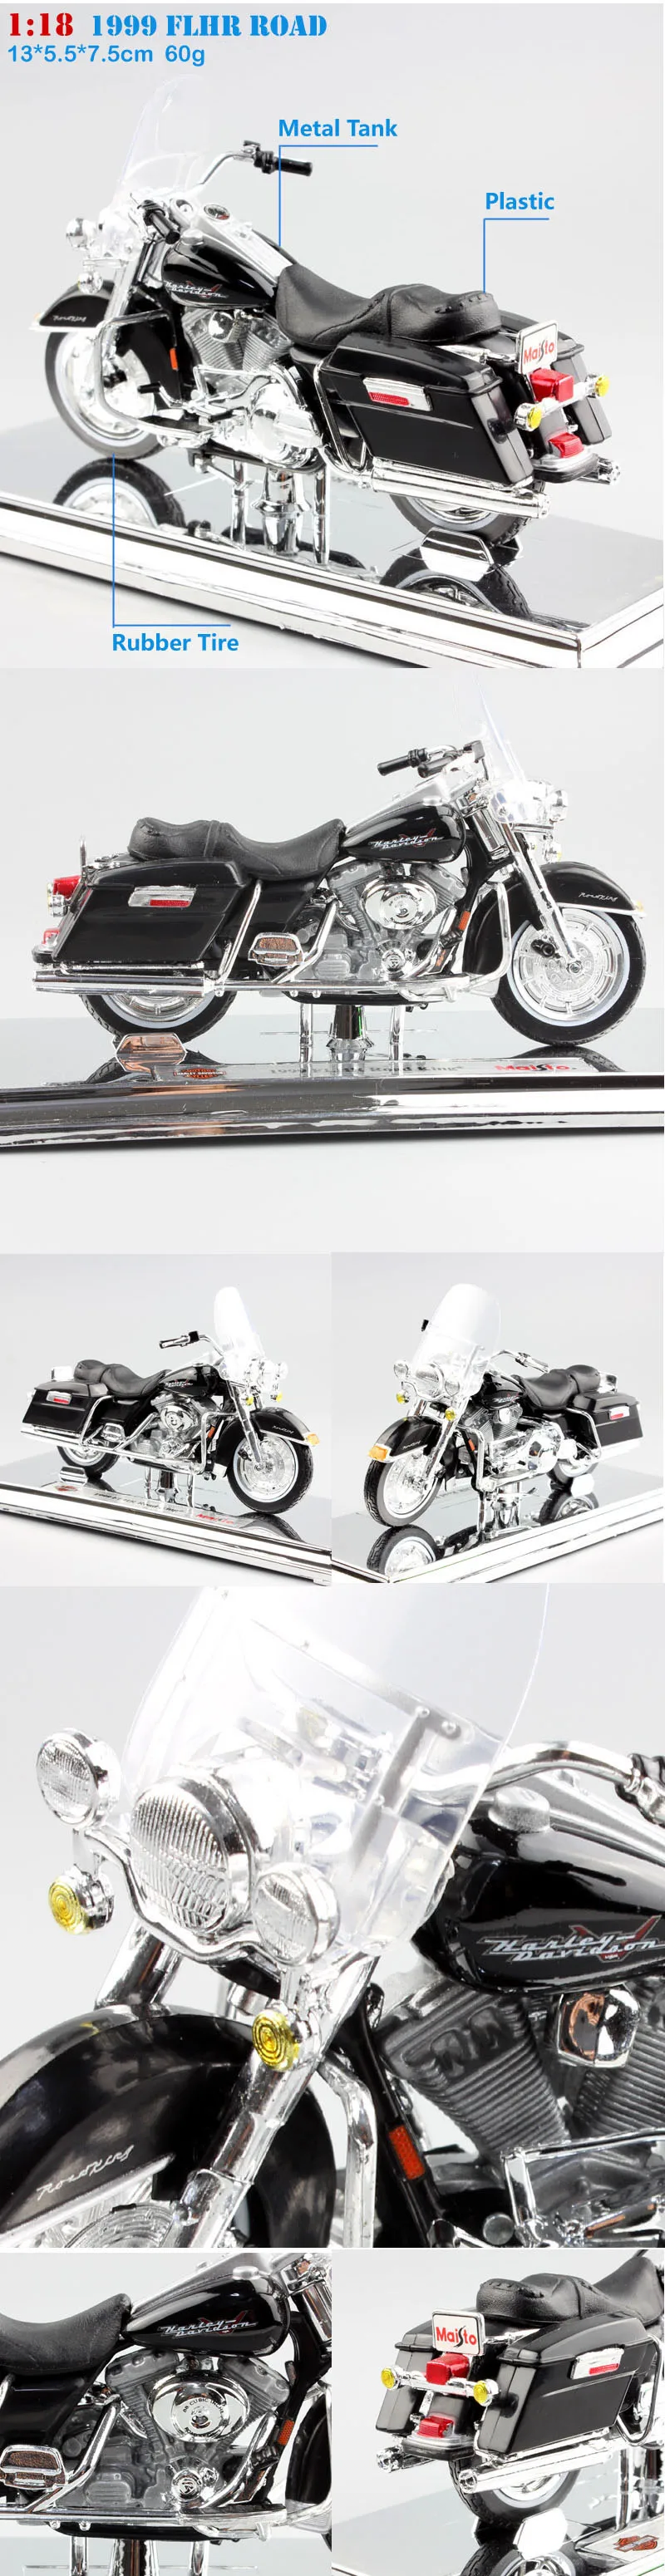 1/18 масштабная детская maisto mini FLHR Road King литая металлическая модель мотоцикла круизер туристический транспорт велосипед игрушки для детей